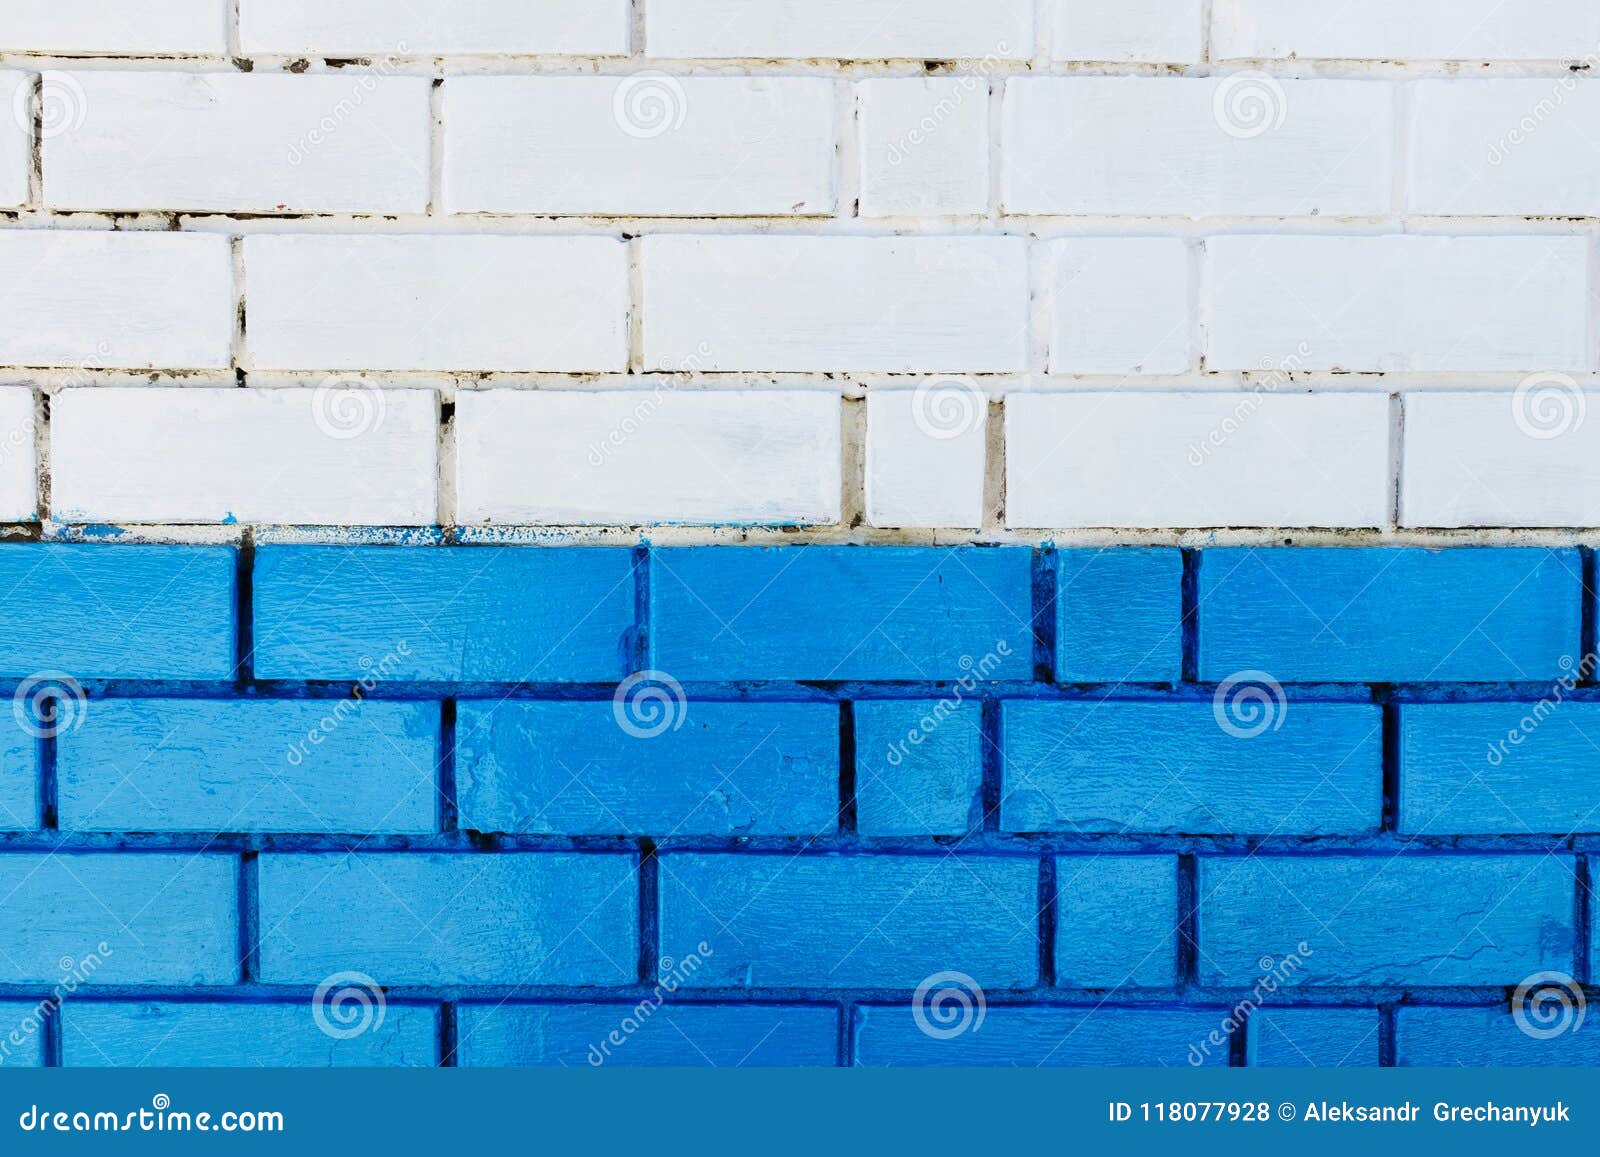 Blue And White Wallpaper Kitchen